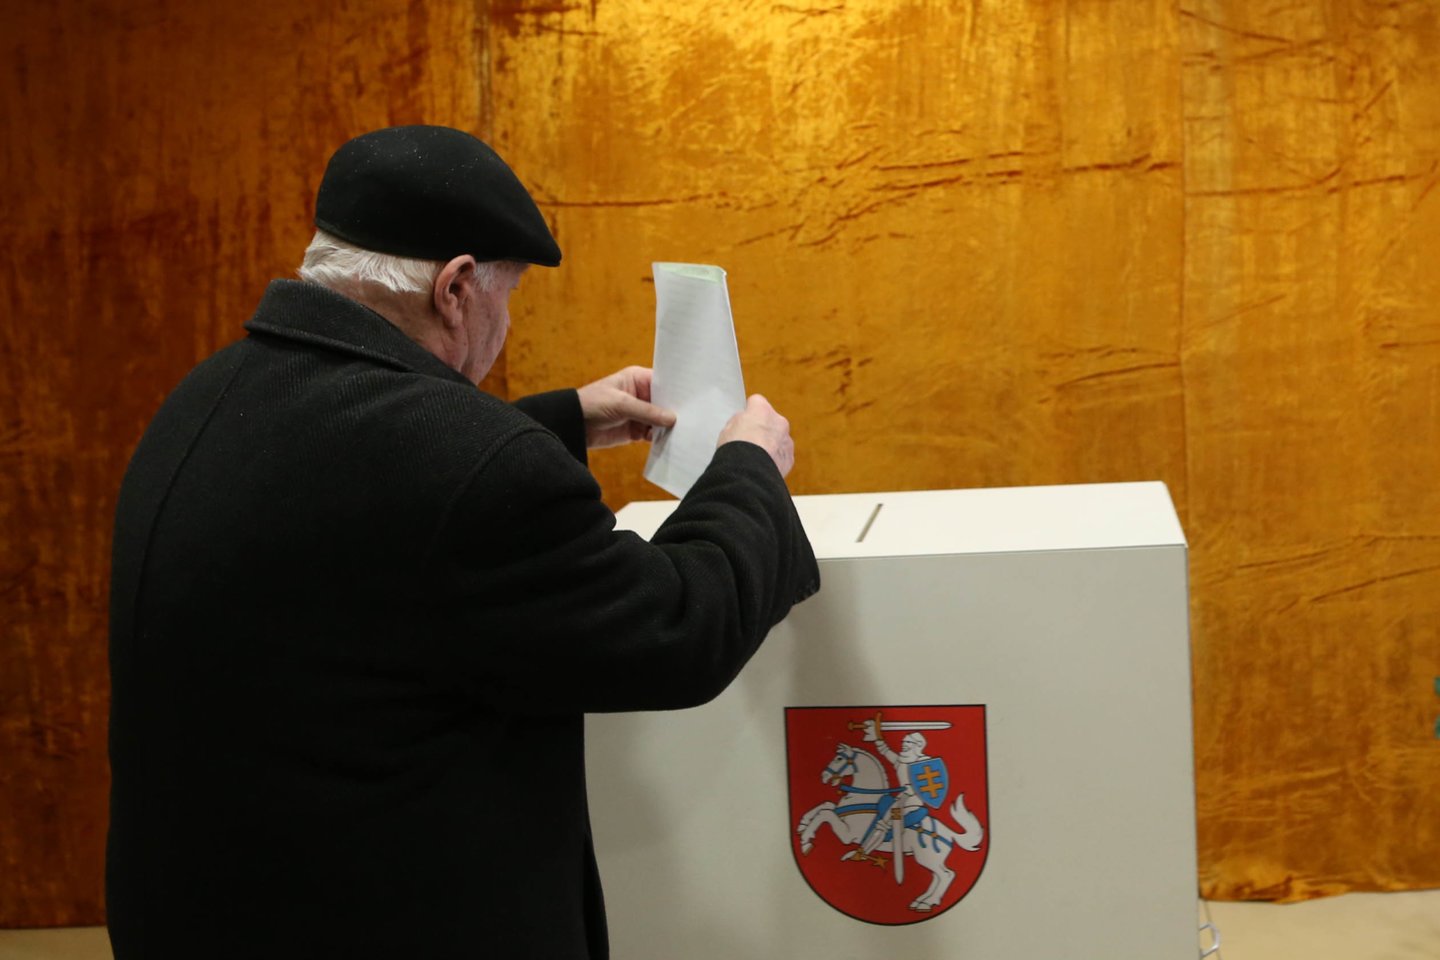 2019-ųjų savivaldos rinkimai baigėsi – sekmadienį 20 val. užsidarius balsavimo apylinkėms, naktį buvo skaičiuojami galutiniai savivaldybių tarybų rinkimų rezultatai.<br>R.Danisevičiaus nuotr.